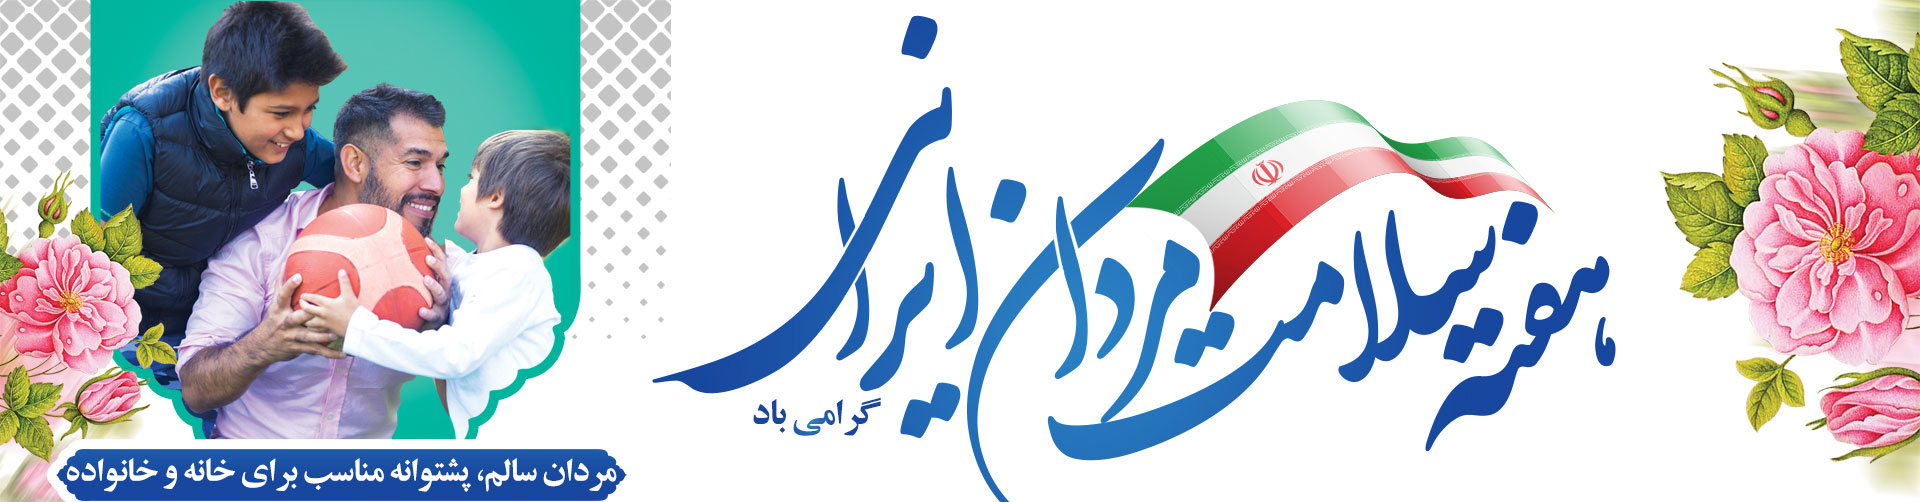 هفته ملی سلامت مردان ایرانی سما  اول تا هفتم اسفند